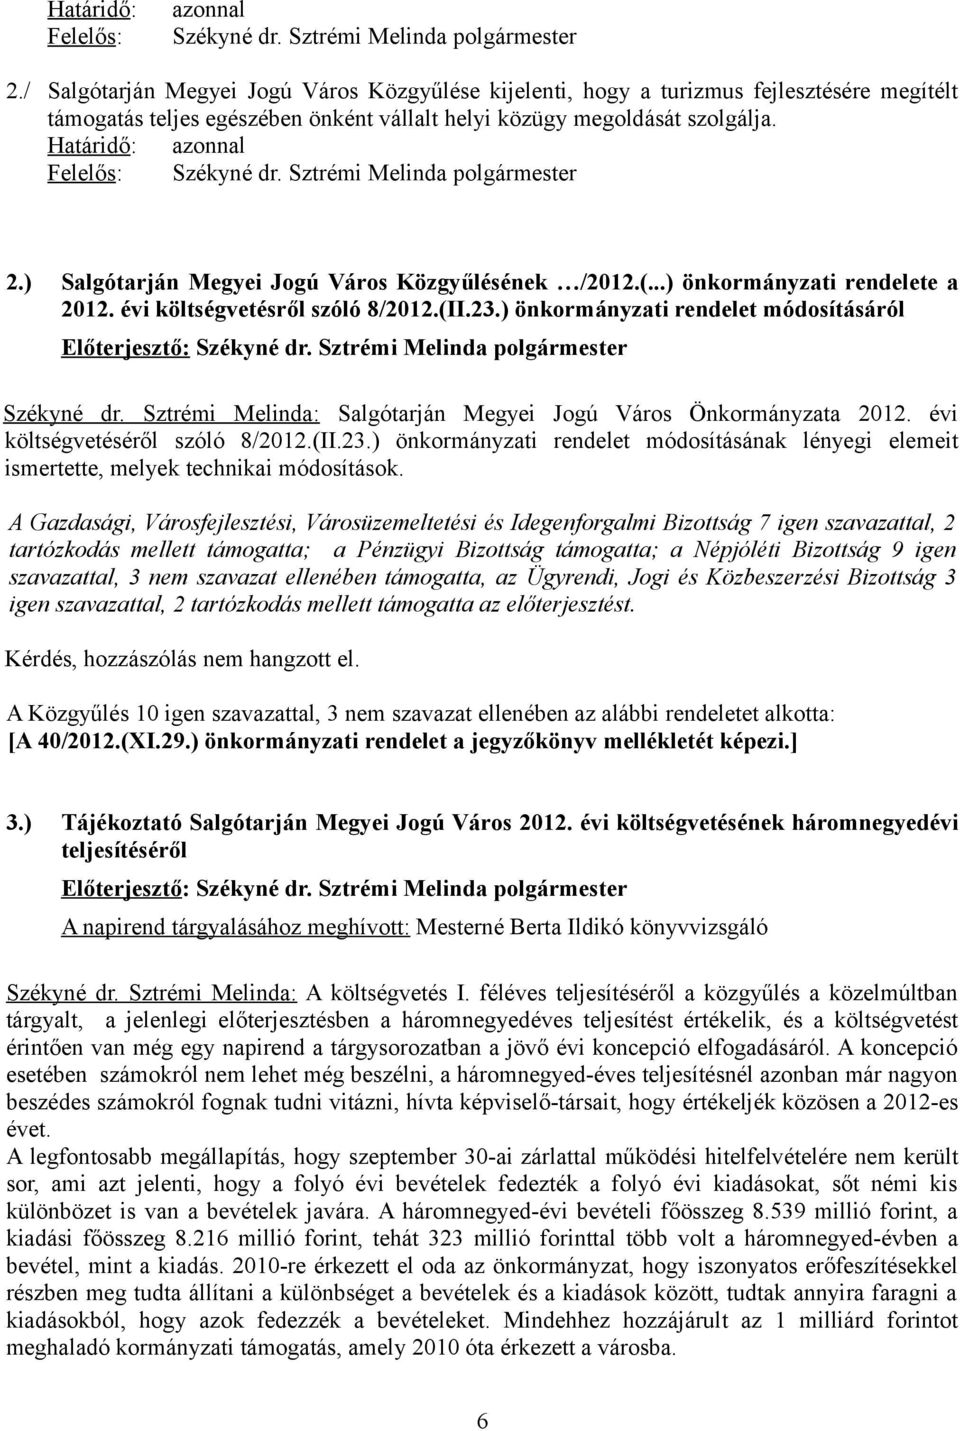 Határidő: azonnal Felelős: Székyné dr. Sztrémi Melinda polgármester 2.) Salgótarján Megyei Jogú Város Közgyűlésének /2012.(...) önkormányzati rendelete a 2012. évi költségvetésről szóló 8/2012.(II.23.